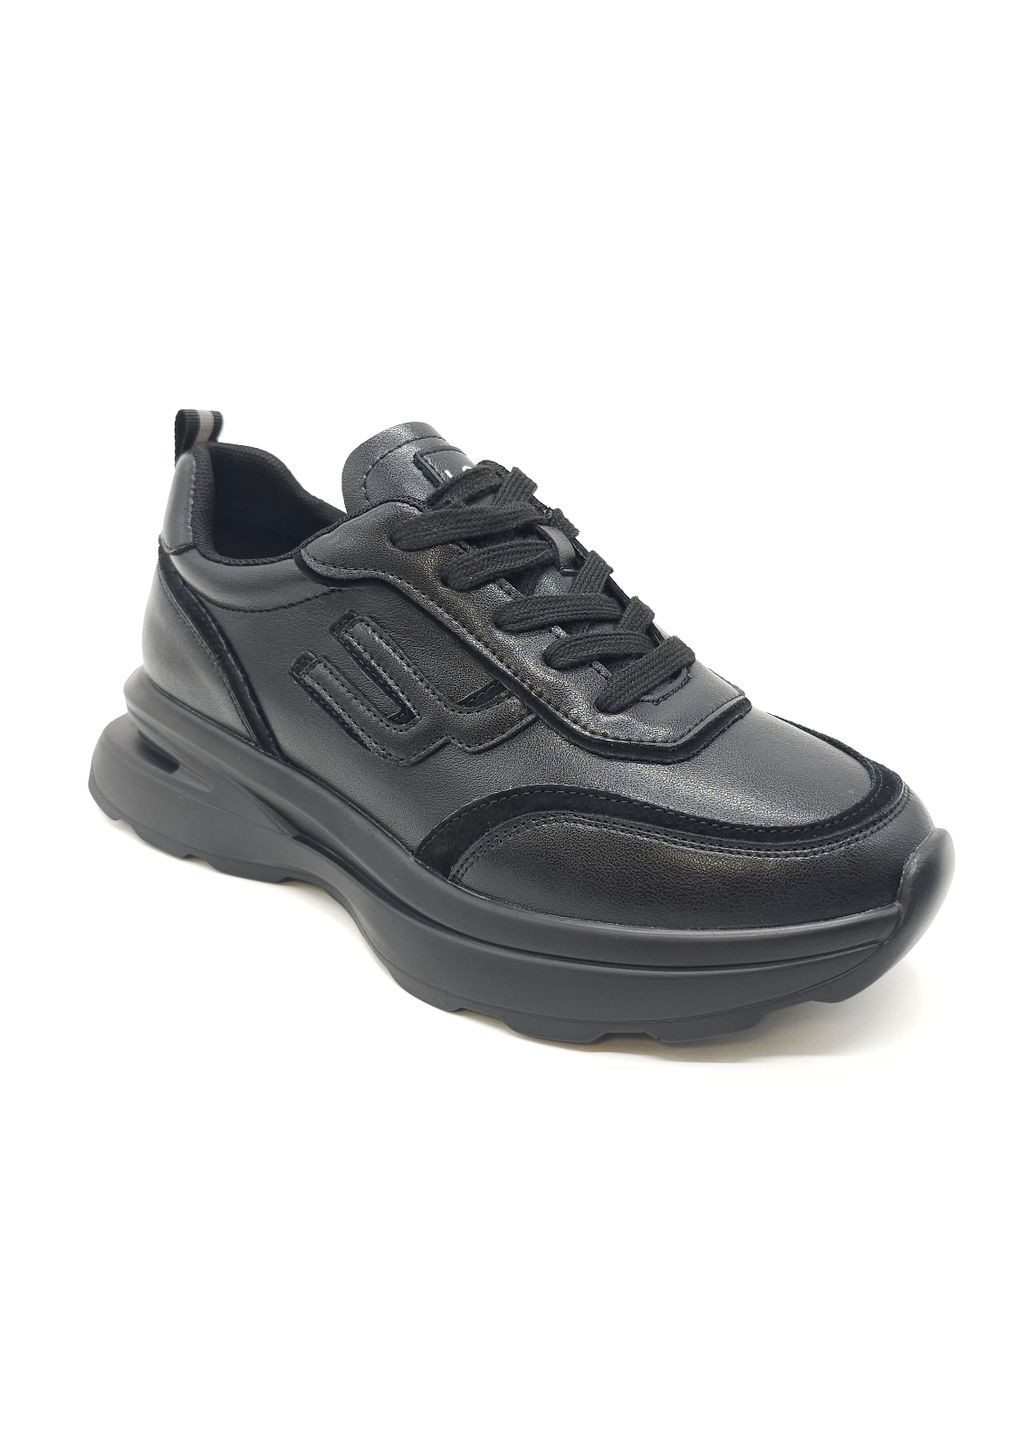 Черные всесезонные женские кроссовки черные кожаные l-10-33 23 см(р) Lonza